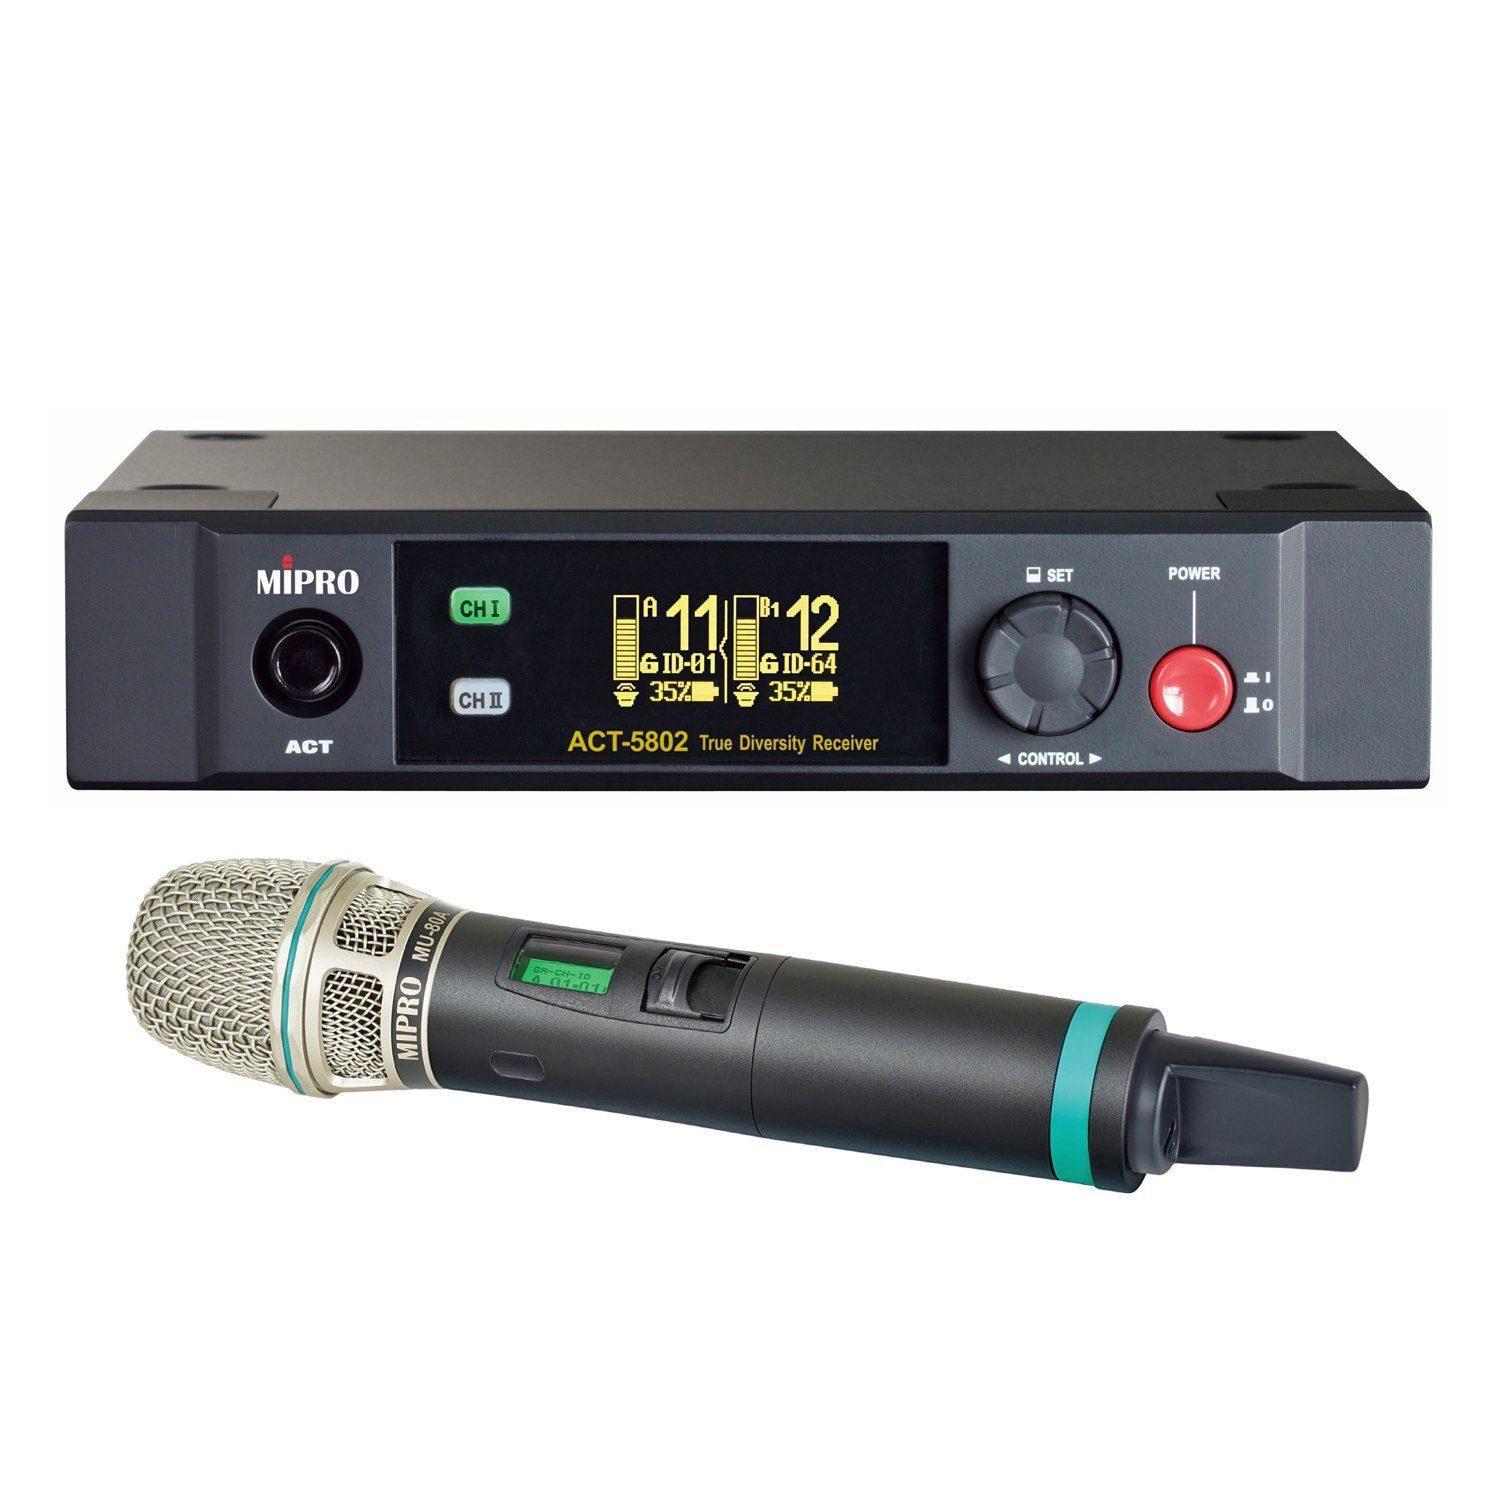 Mipro Audio Mikrofon ACT-5802 2-Kanal Empfänger mit Handsender